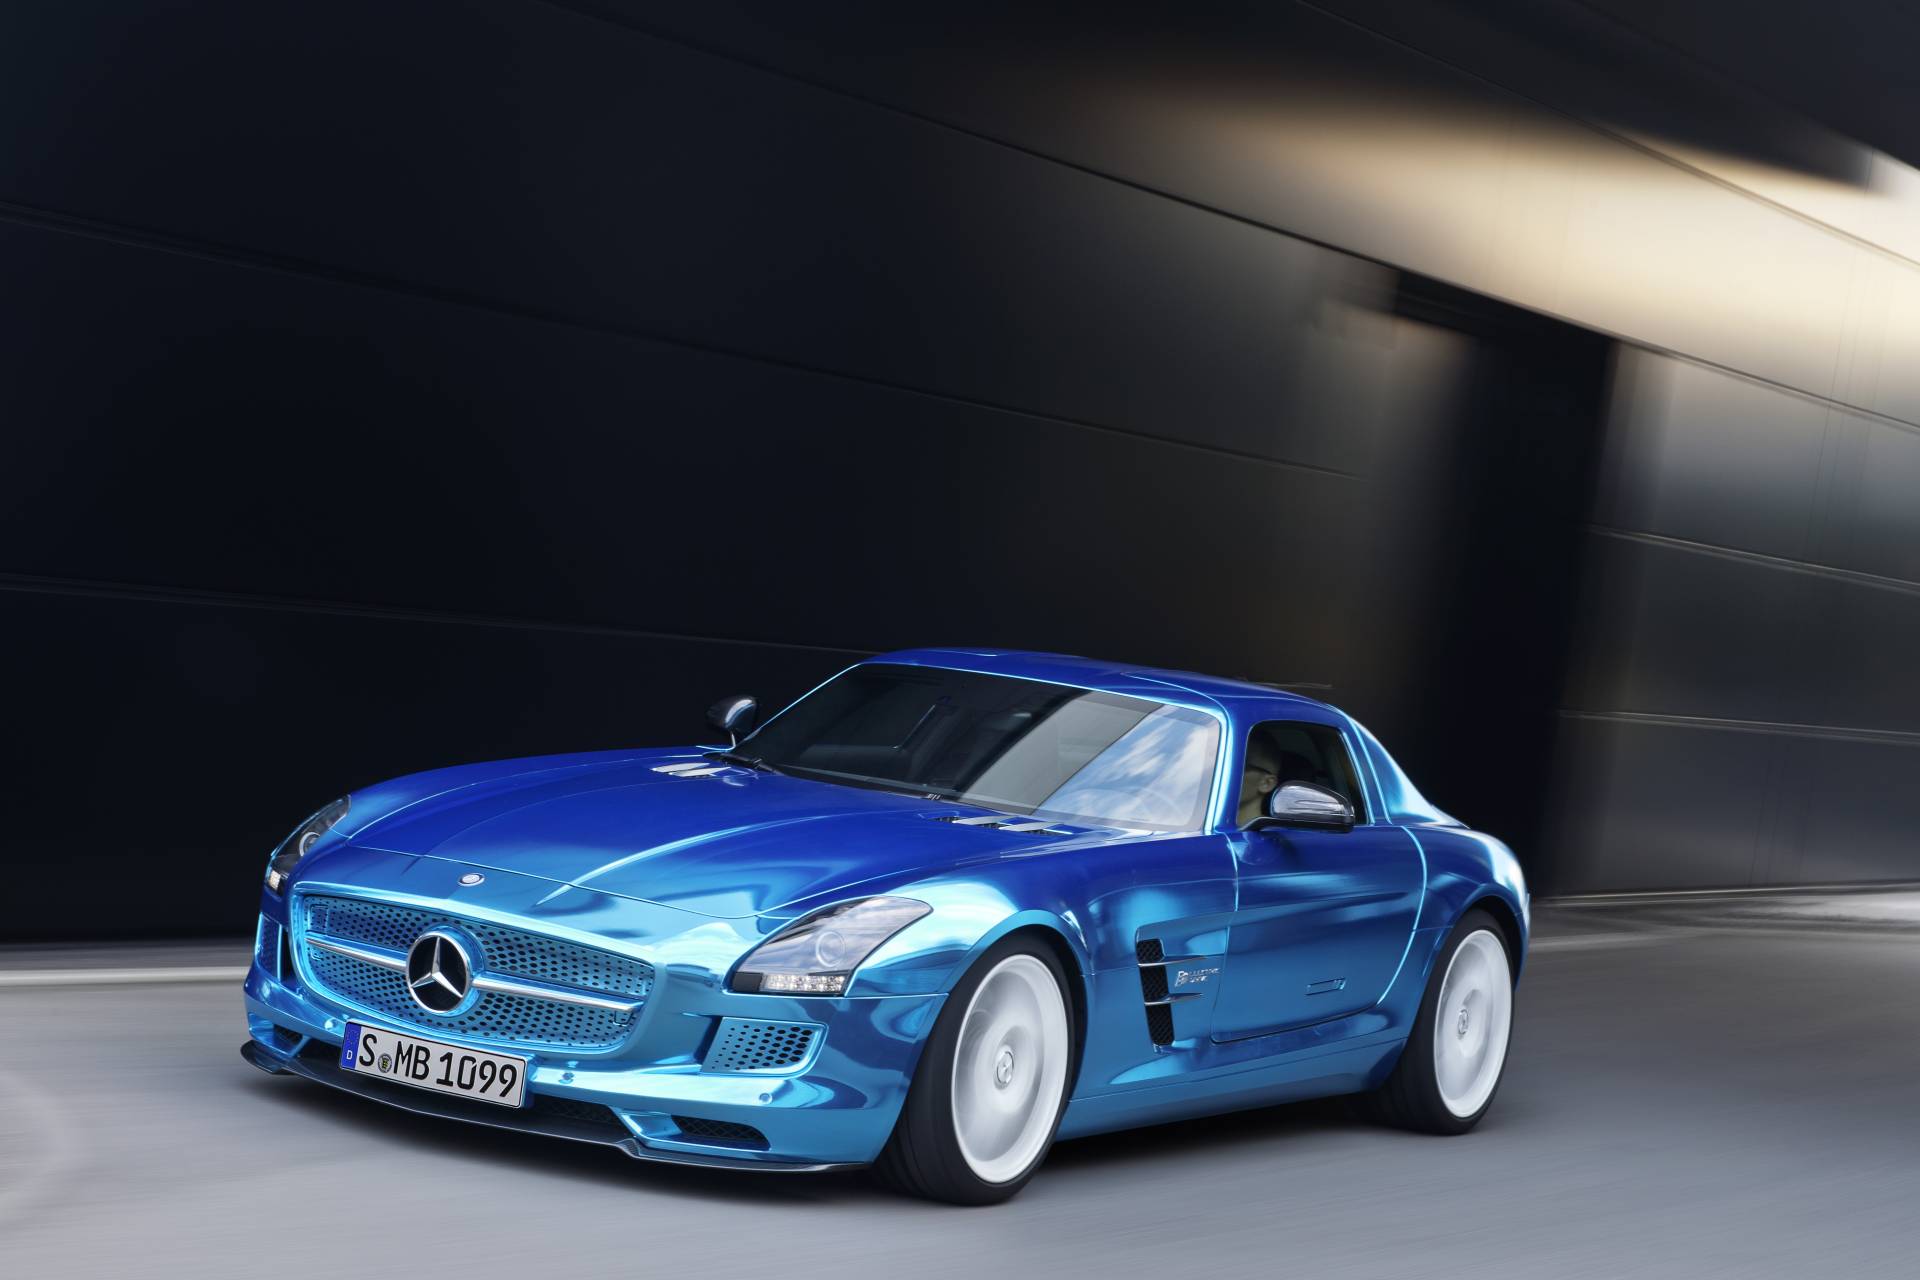 2013 Mercedes-Benz SLS AMG Electric Drive